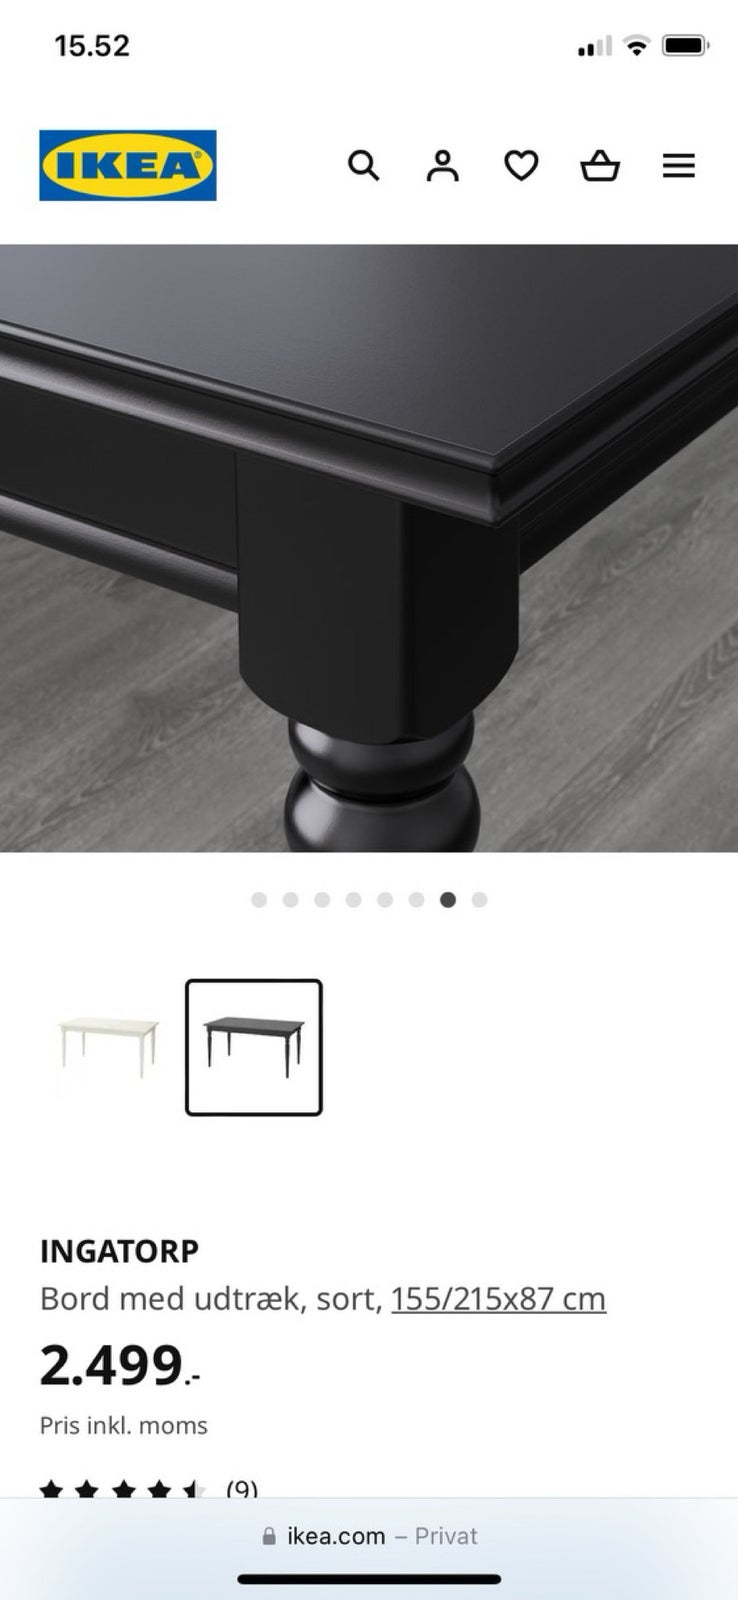 Spisebord, Ikea Ingatorp